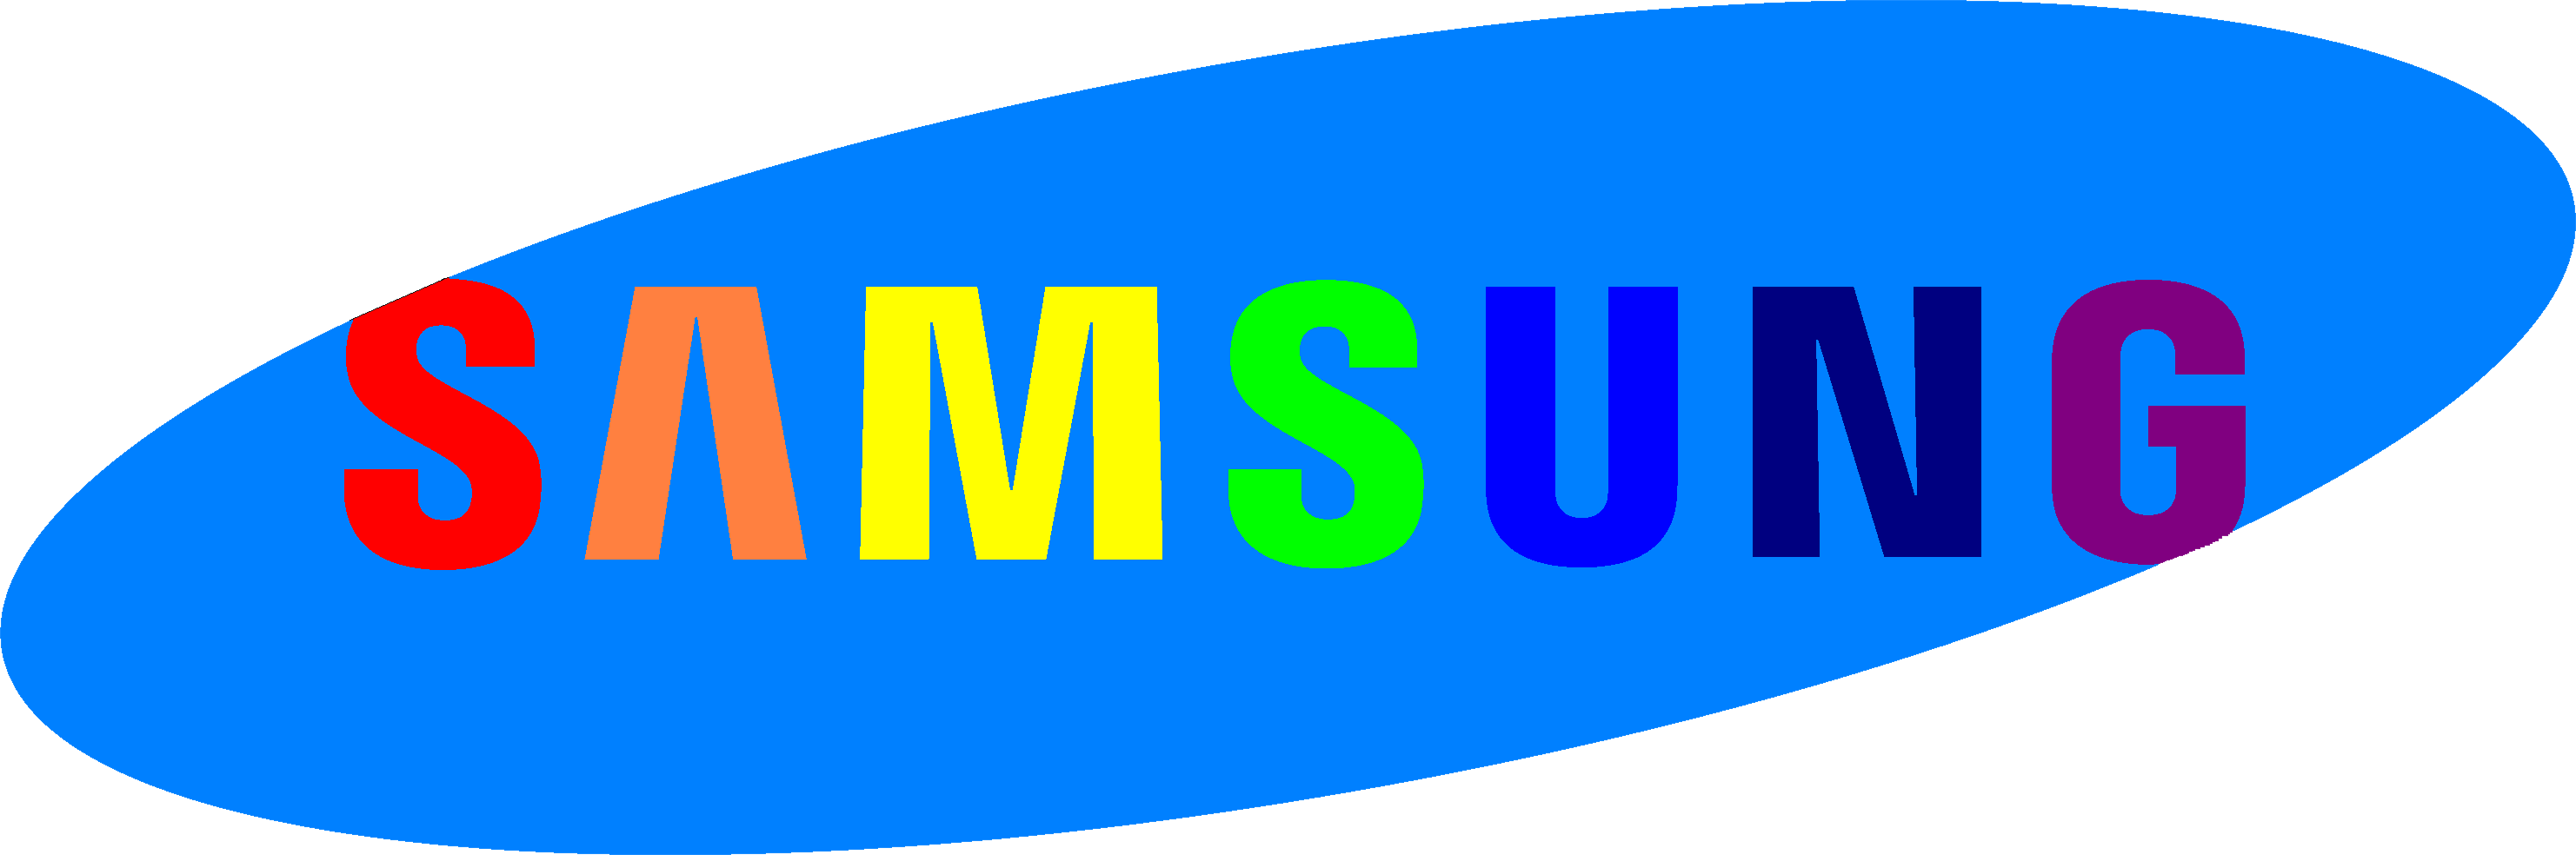 Samsung logo transparente gratis PNG